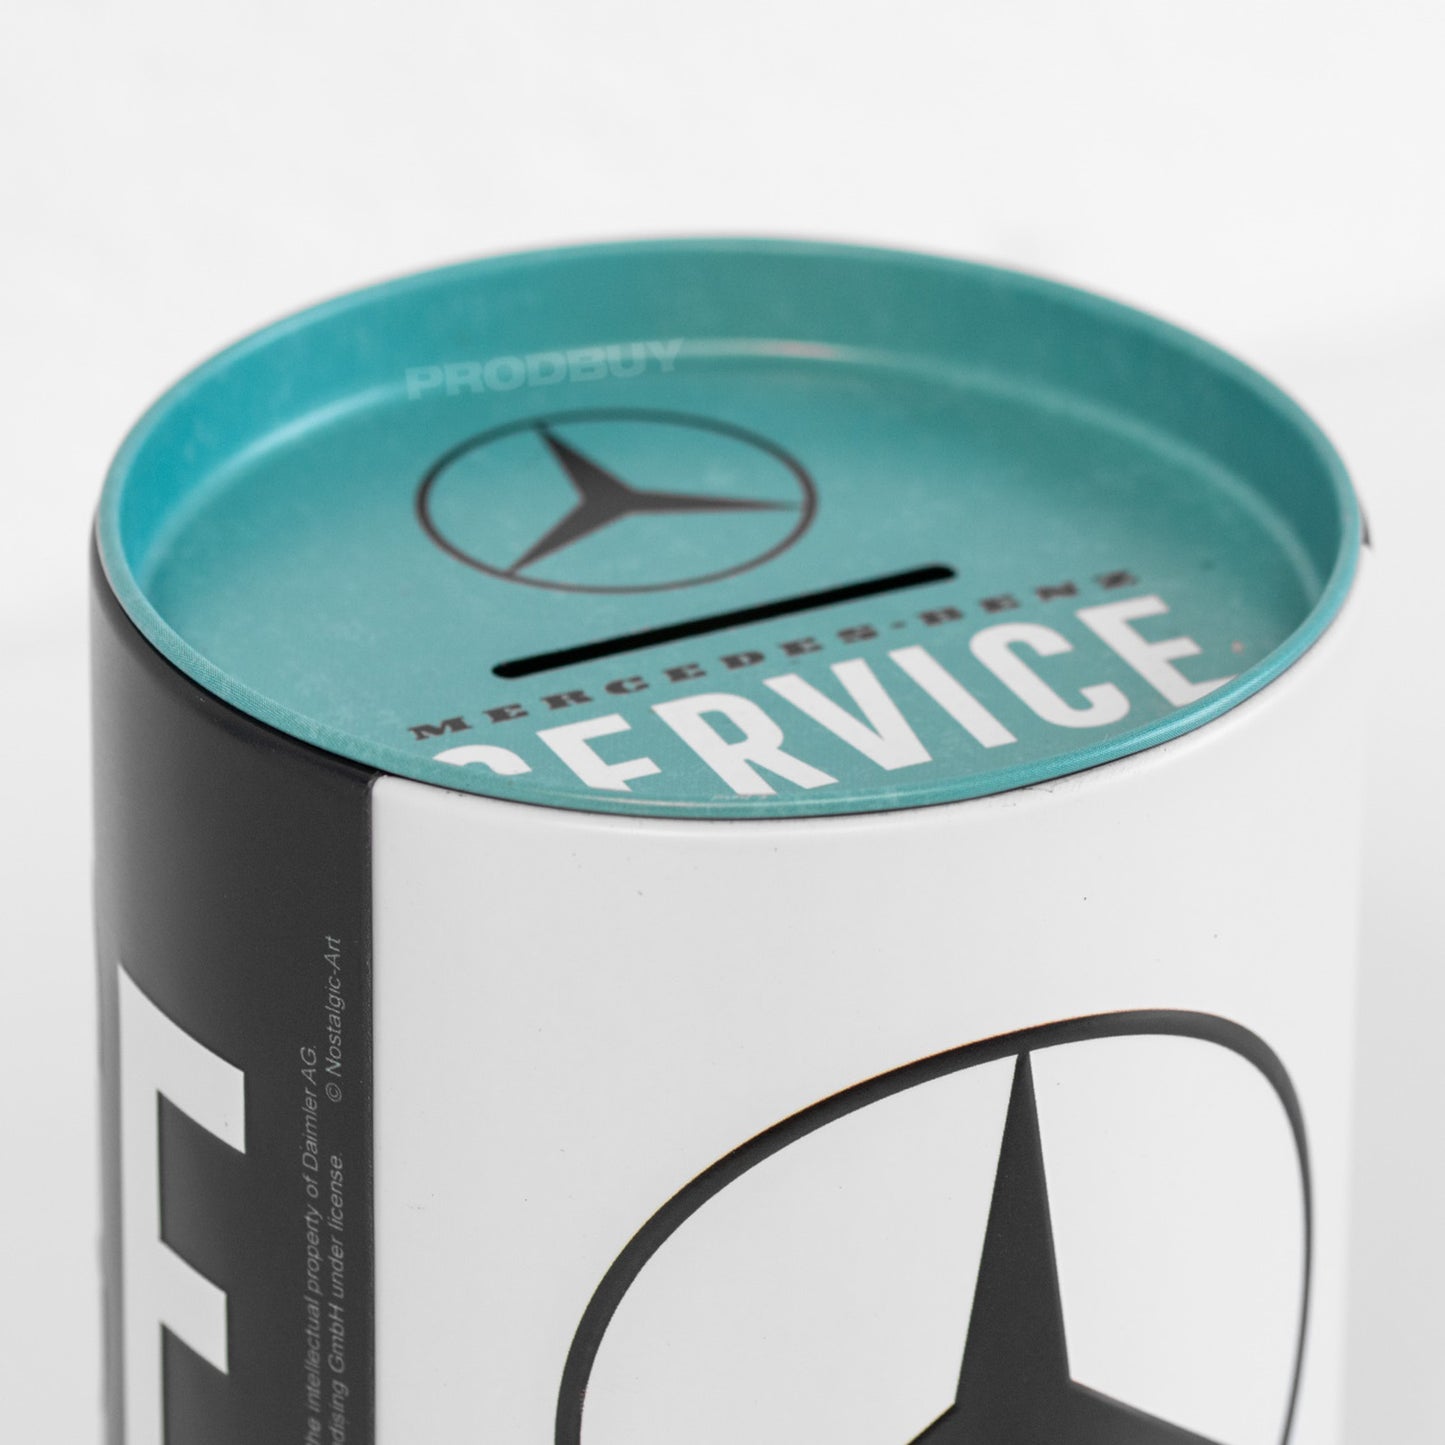 Mercedes-Benz Service Money Tin Coin Savings Pot